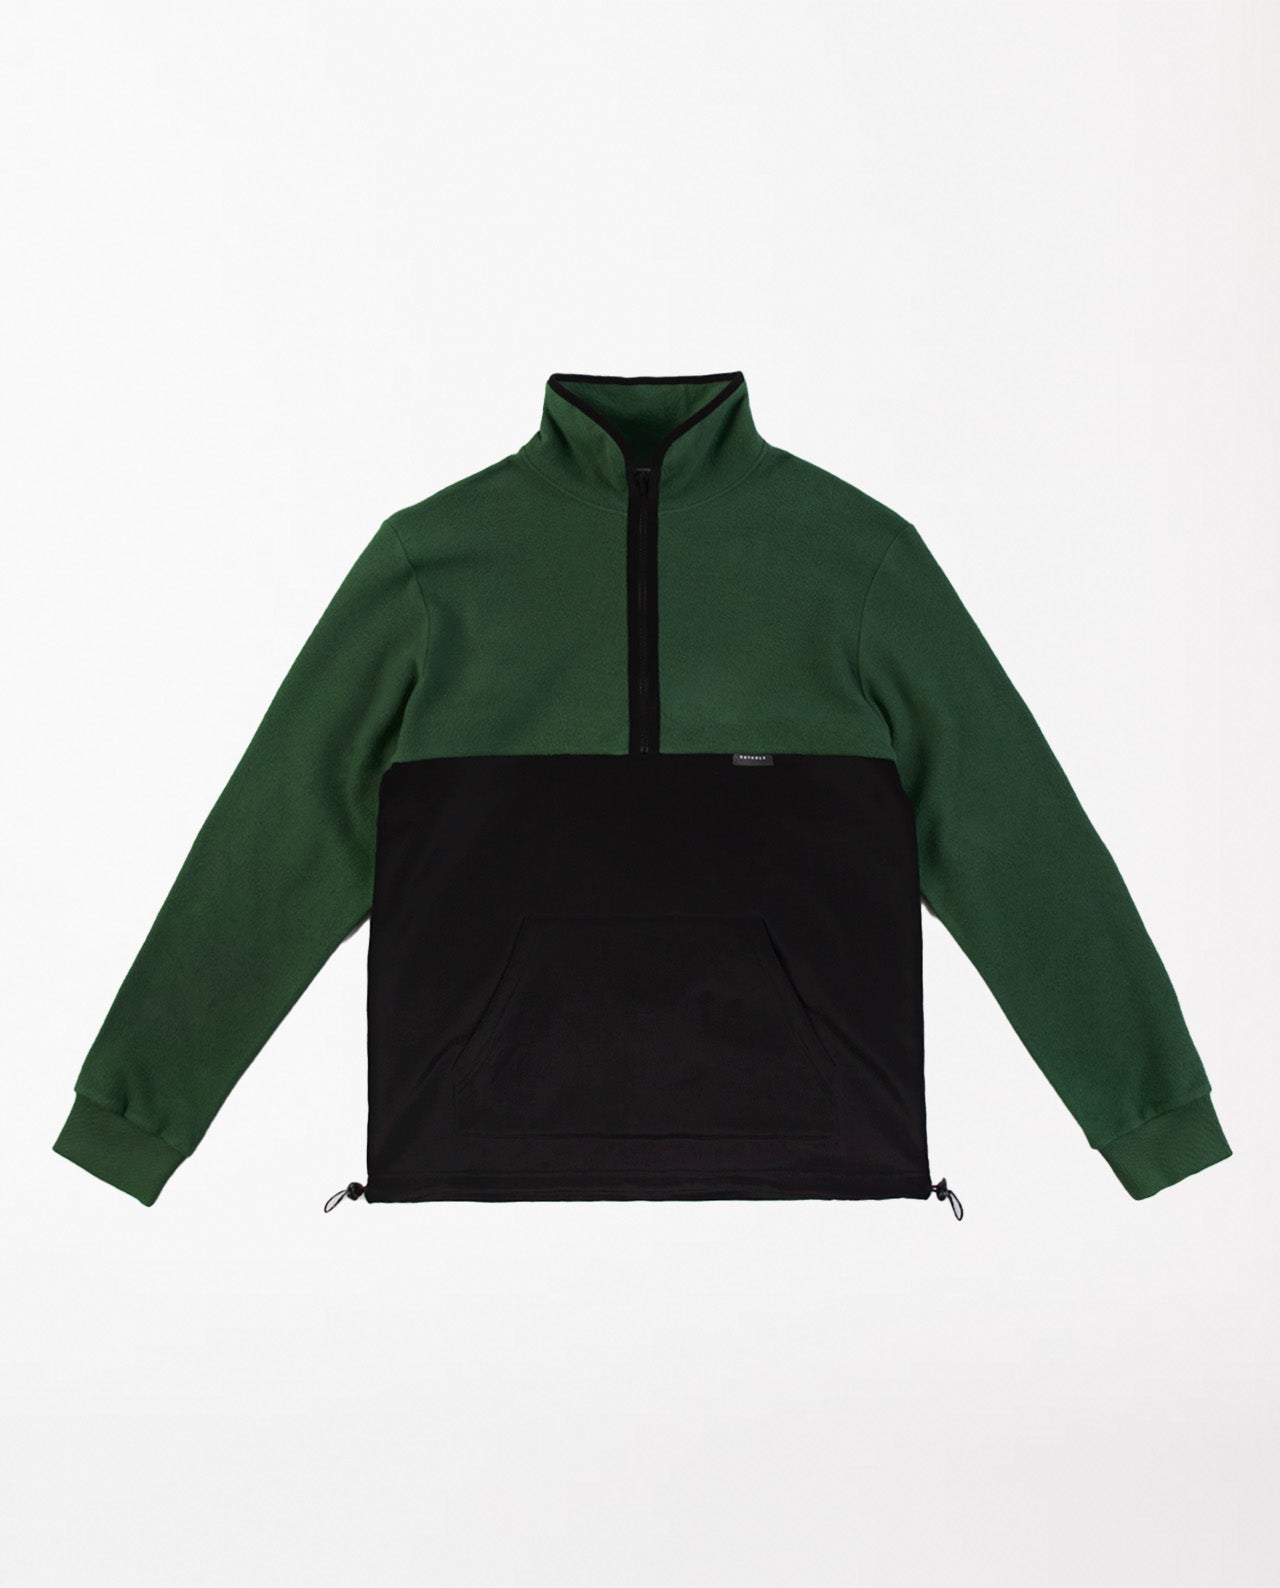 marché commun rotholz sweatshirt zippé polaire coton biologique bicolore noir vert